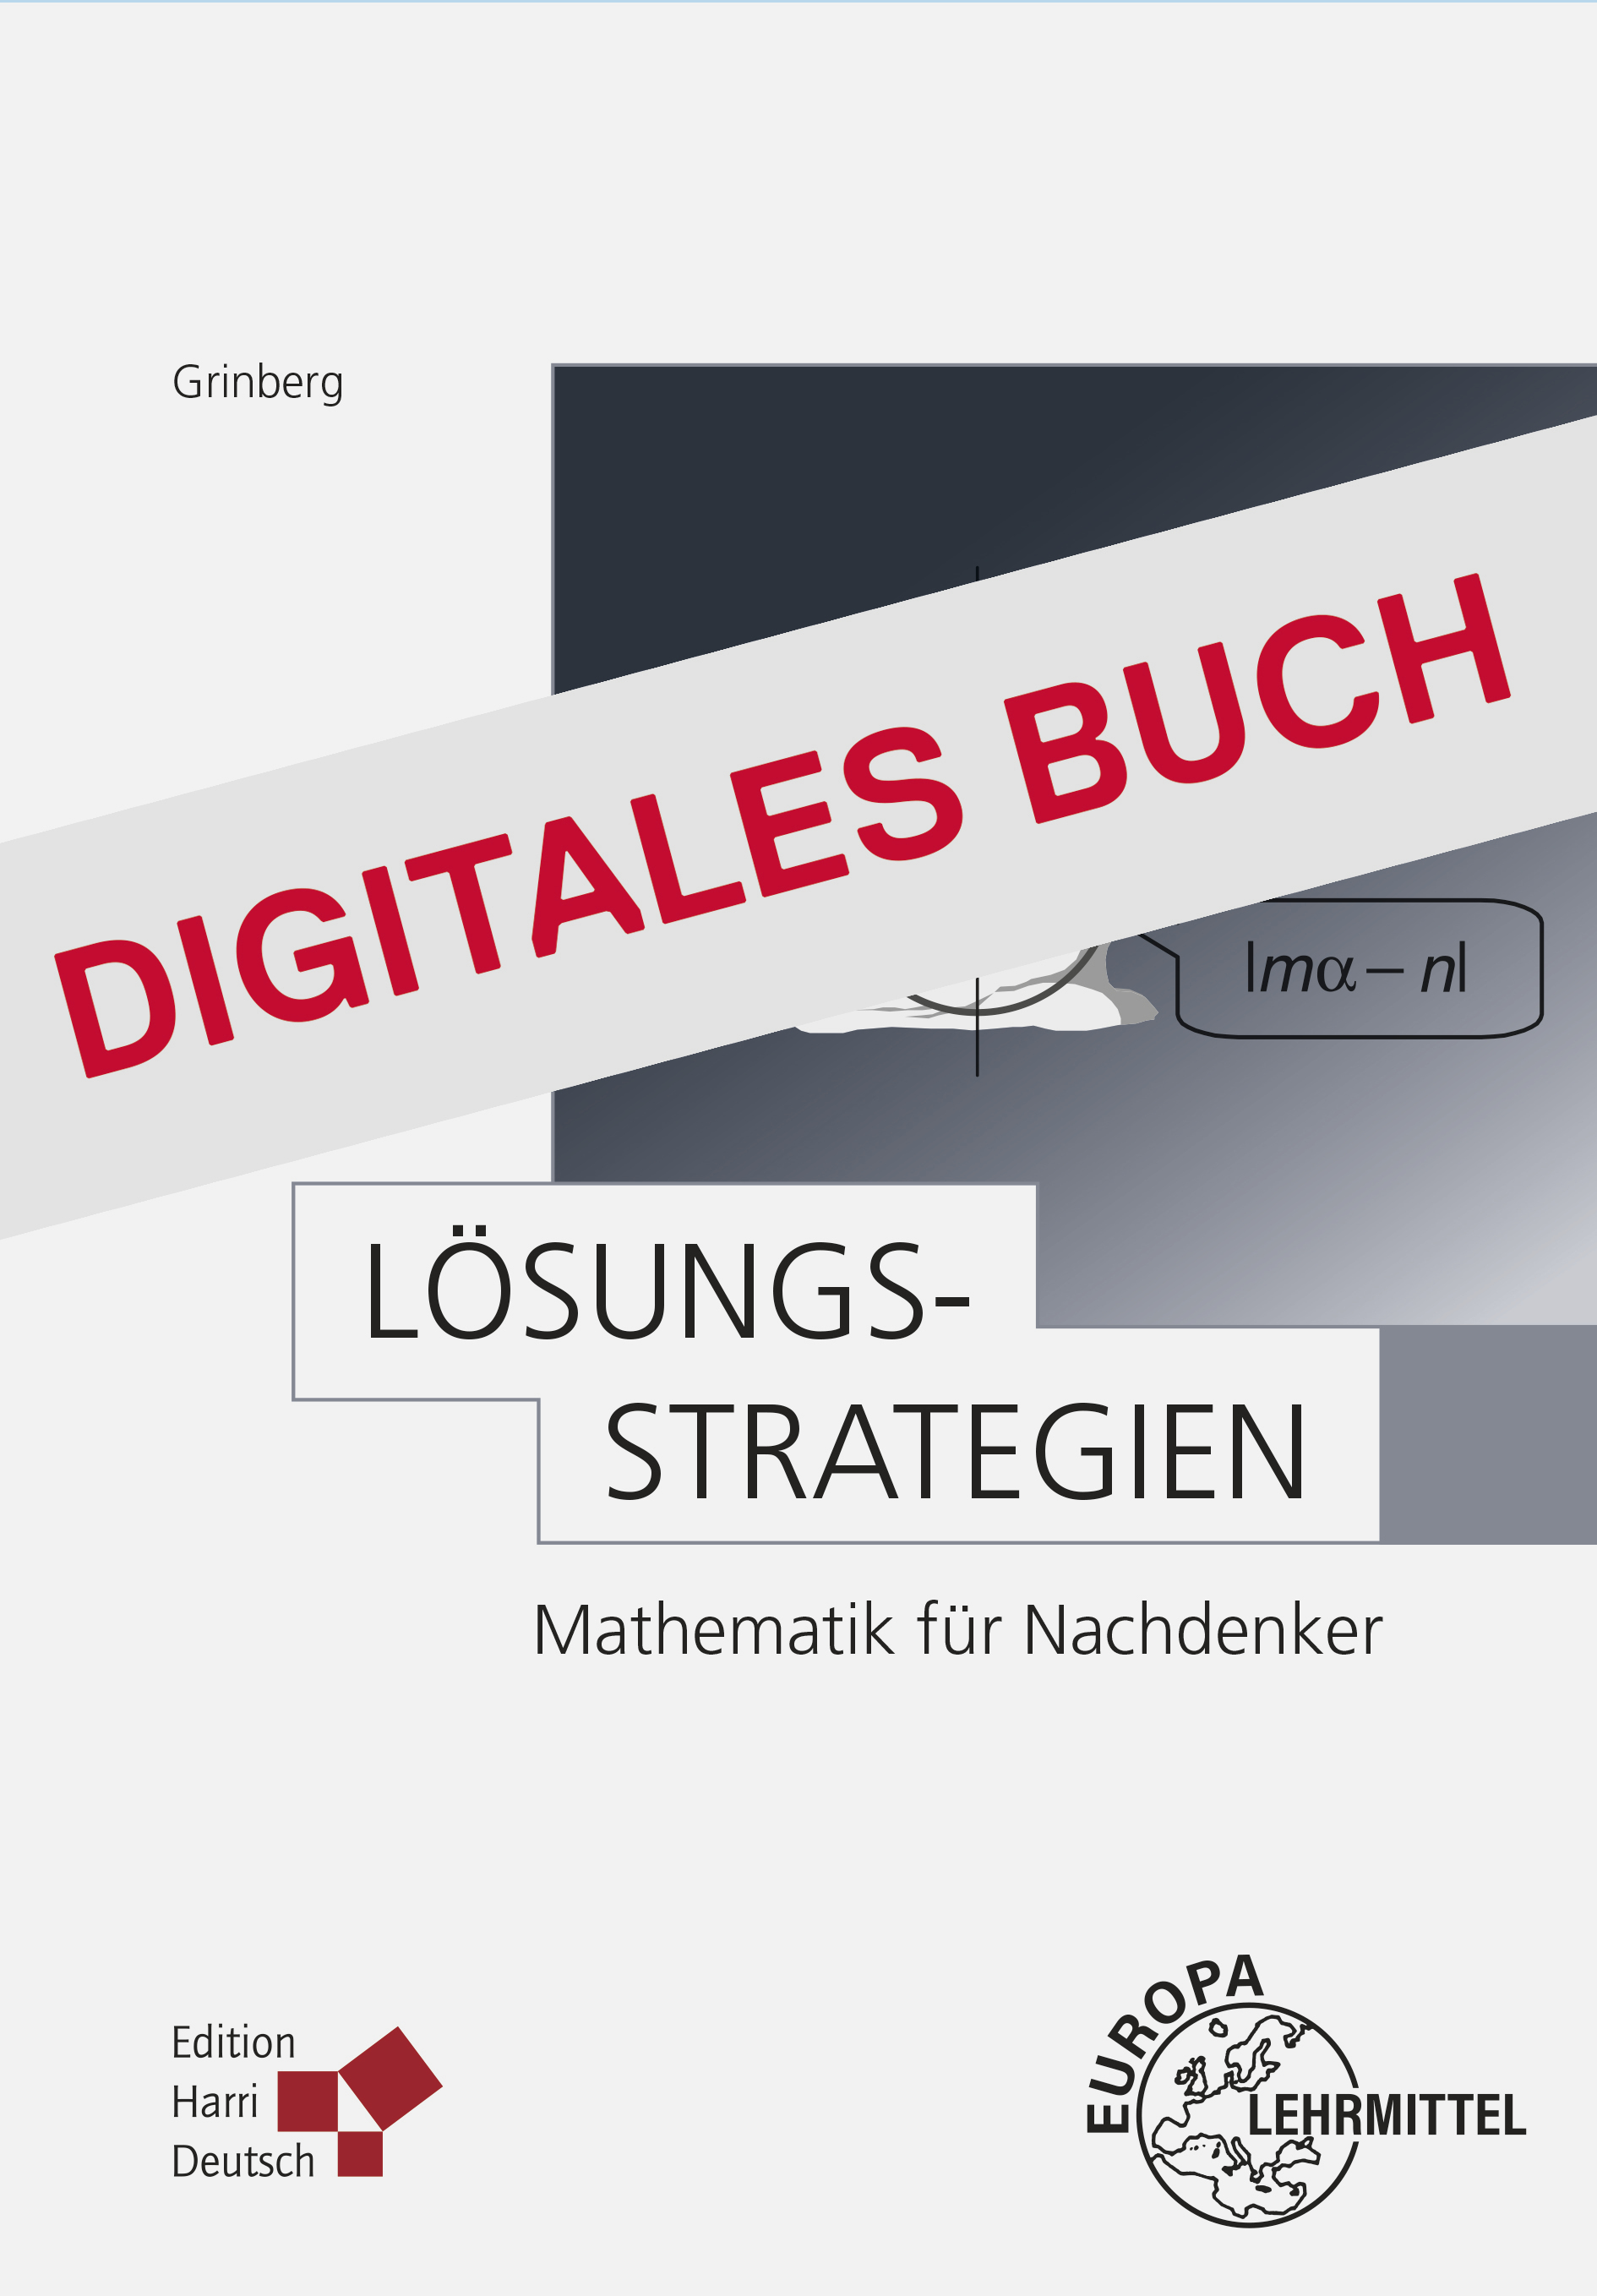 Lösungsstrategien - Digitales Buch